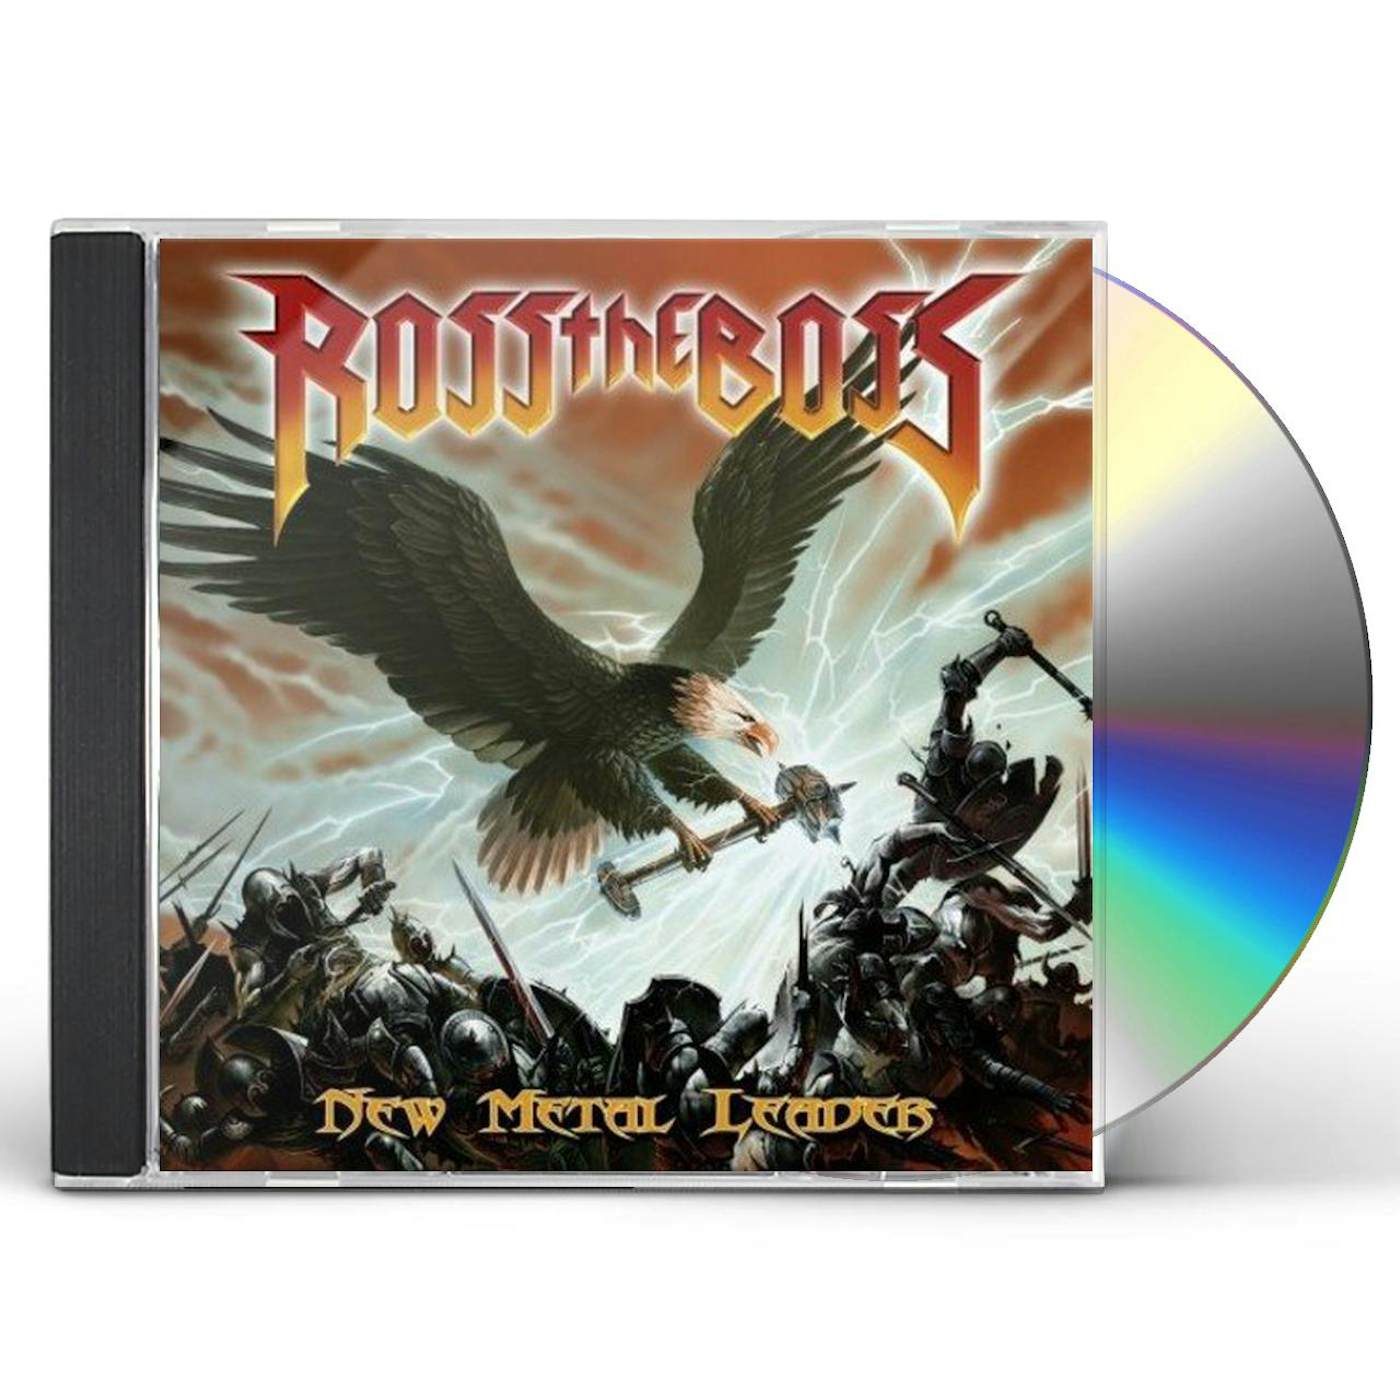 Ross The Boss New Metal Leader CD